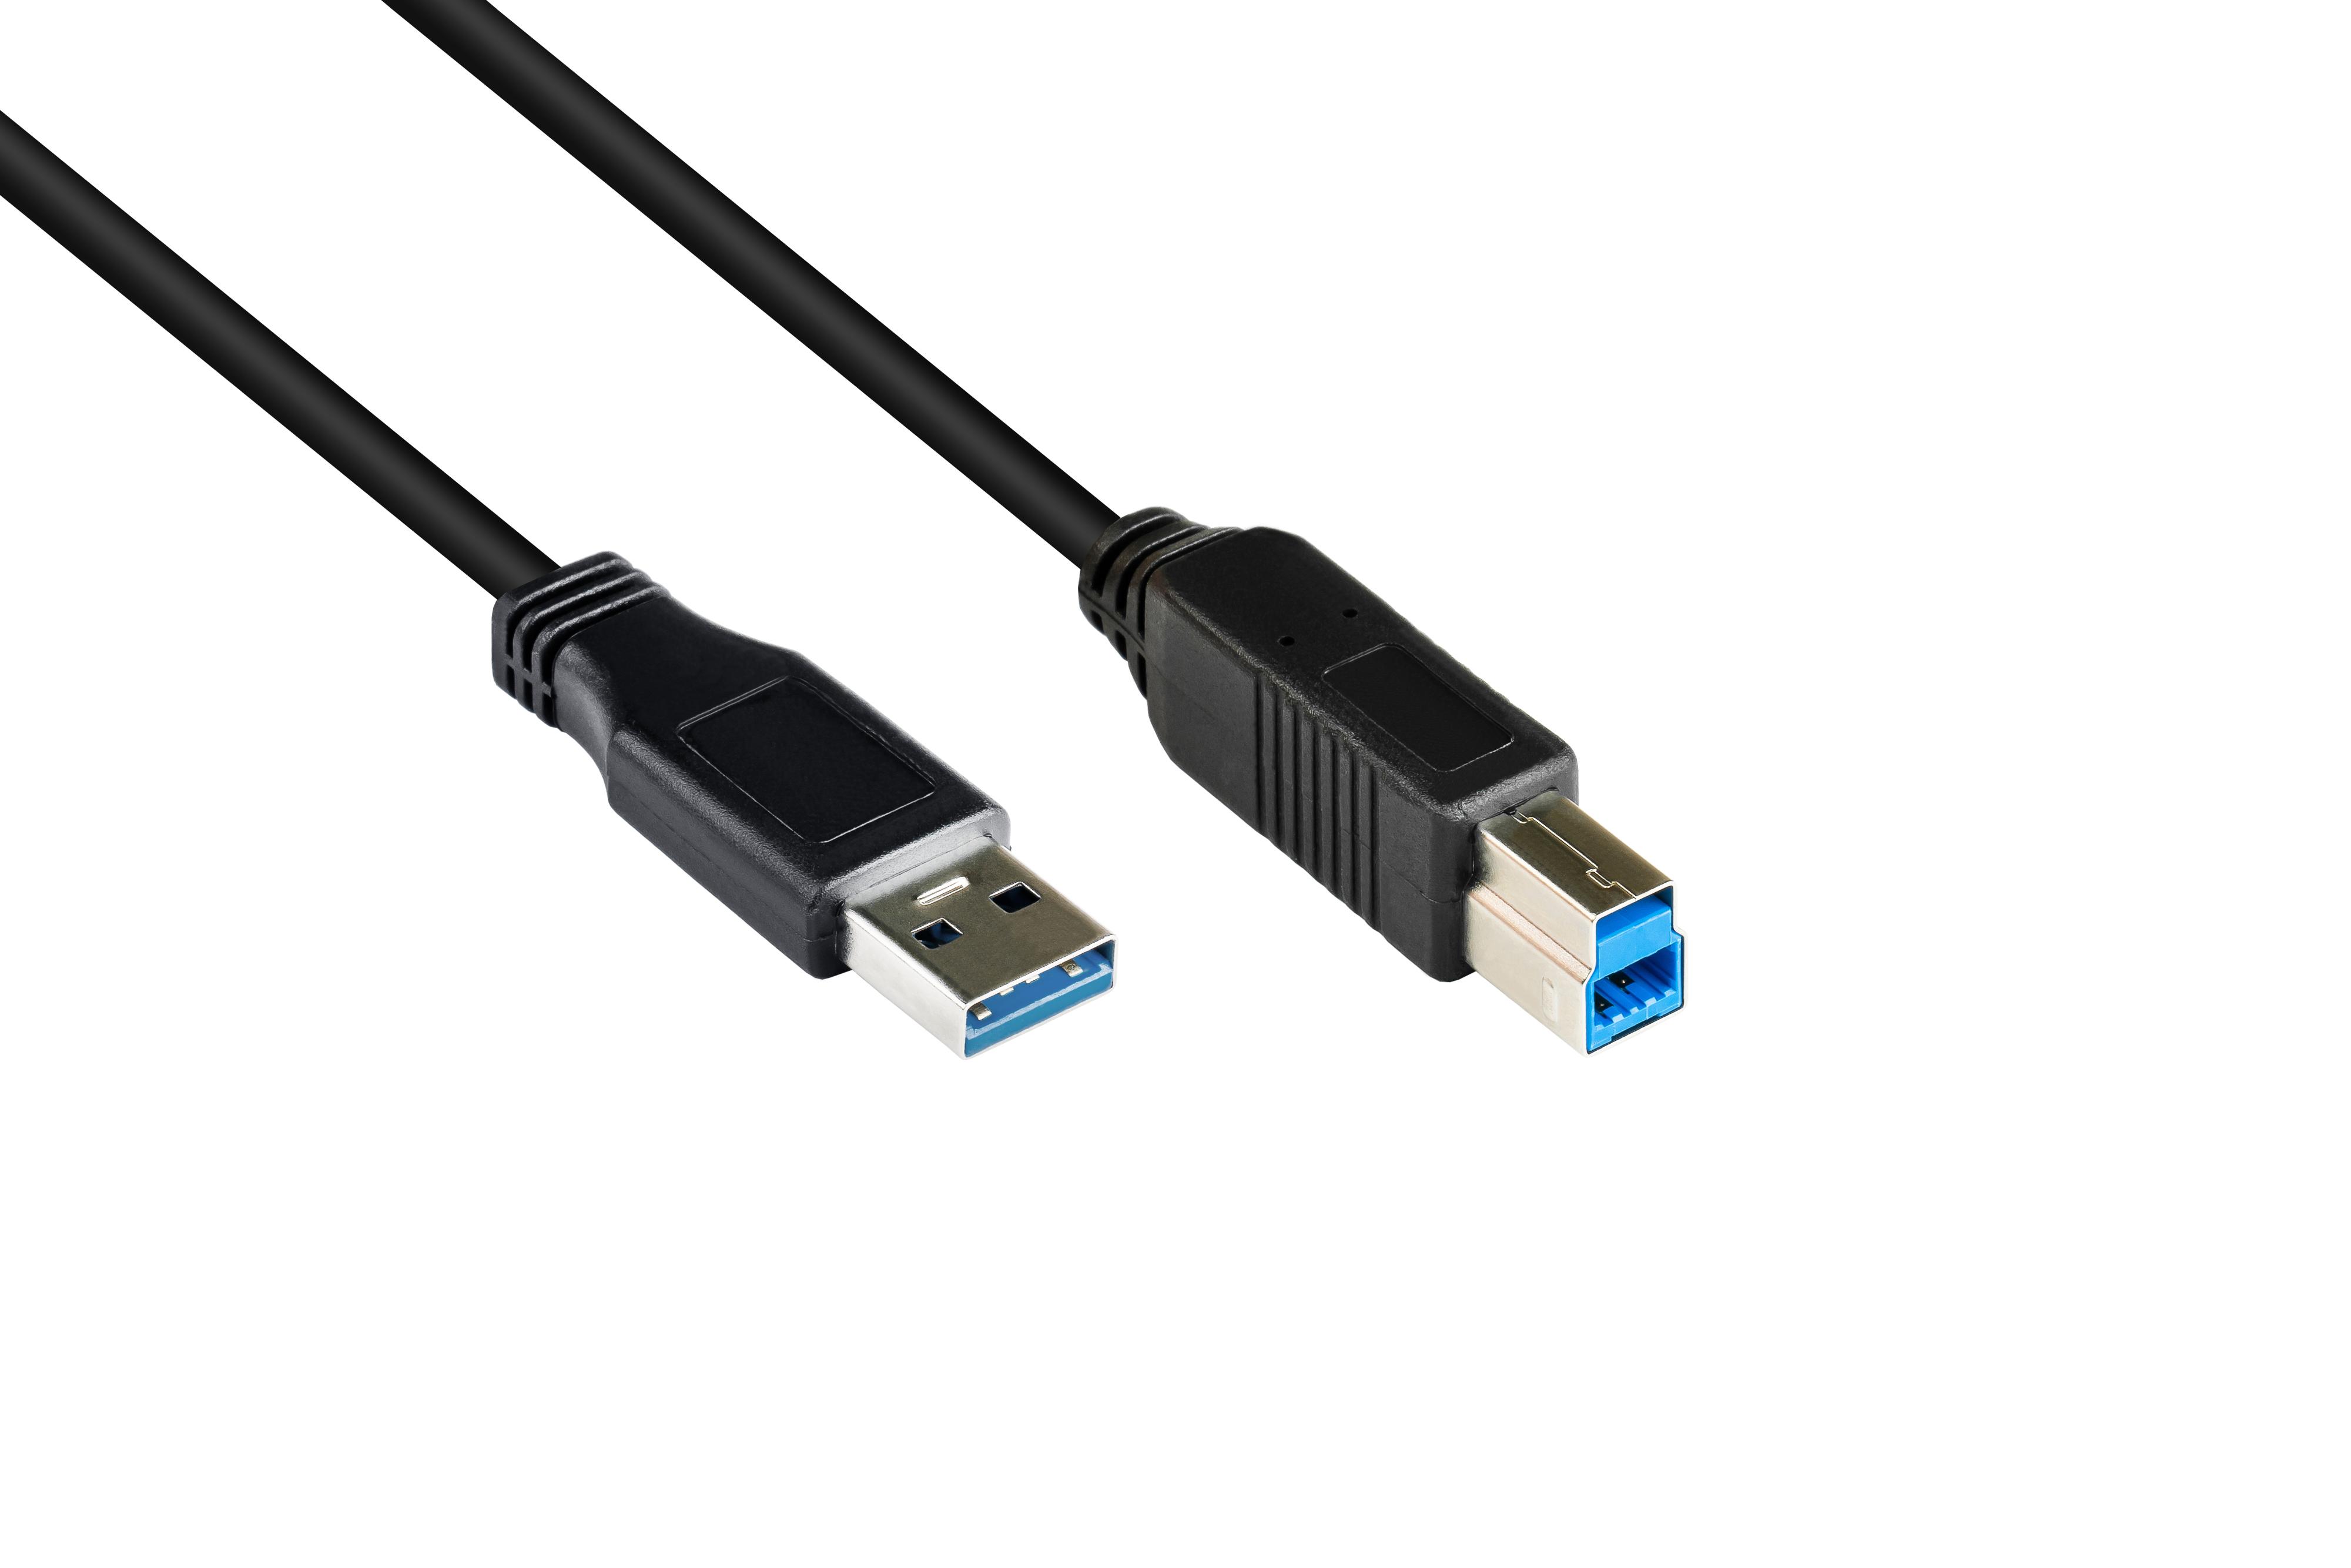 CONNECTIONS B, an Stecker GOOD Stecker Anschlusskabel schwarz 3.0 A USB